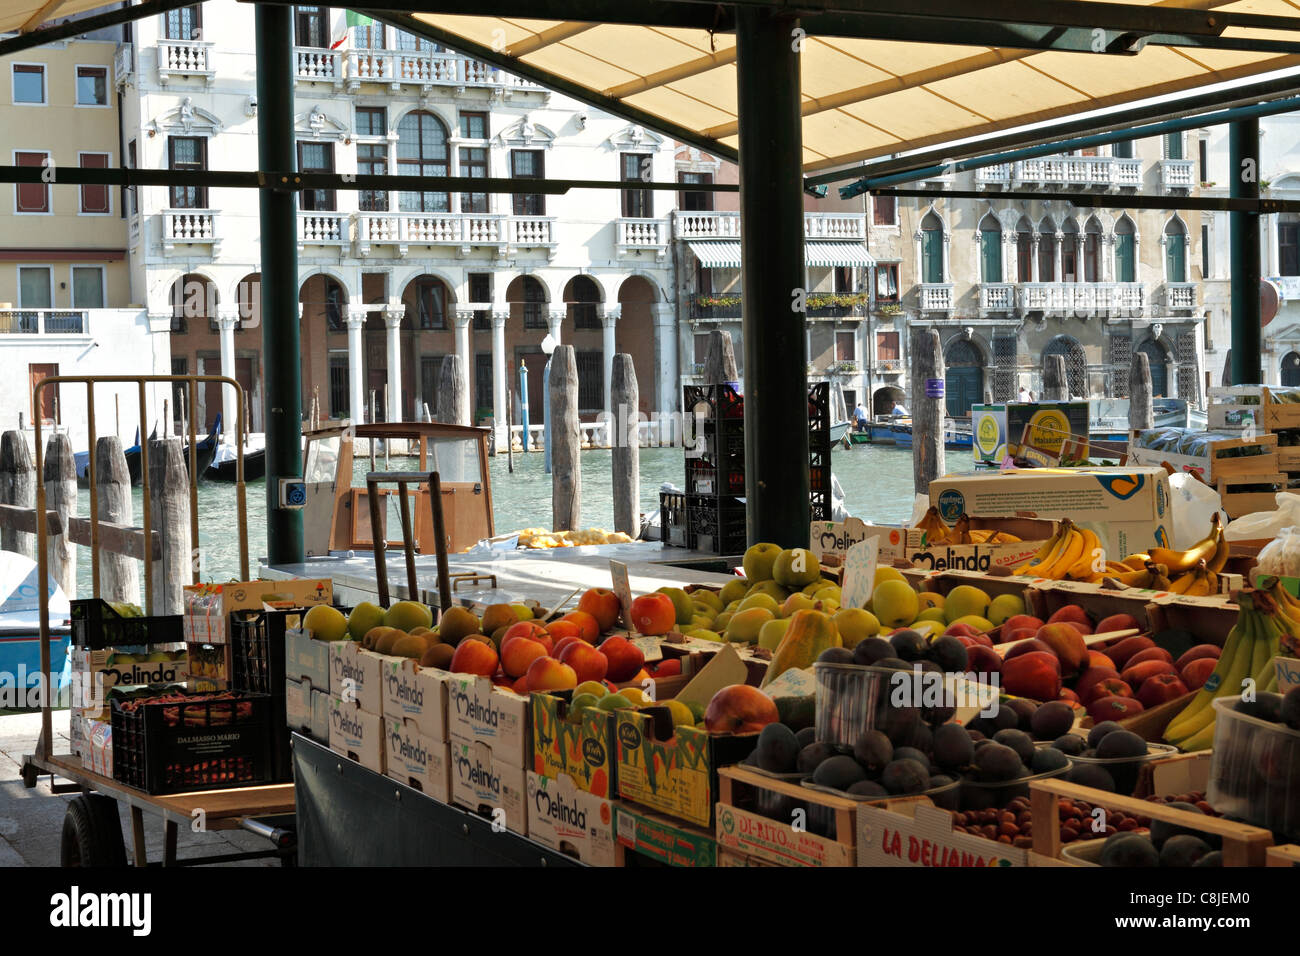 Marché Alimentaire du Rialto, Venise Italie Banque D'Images